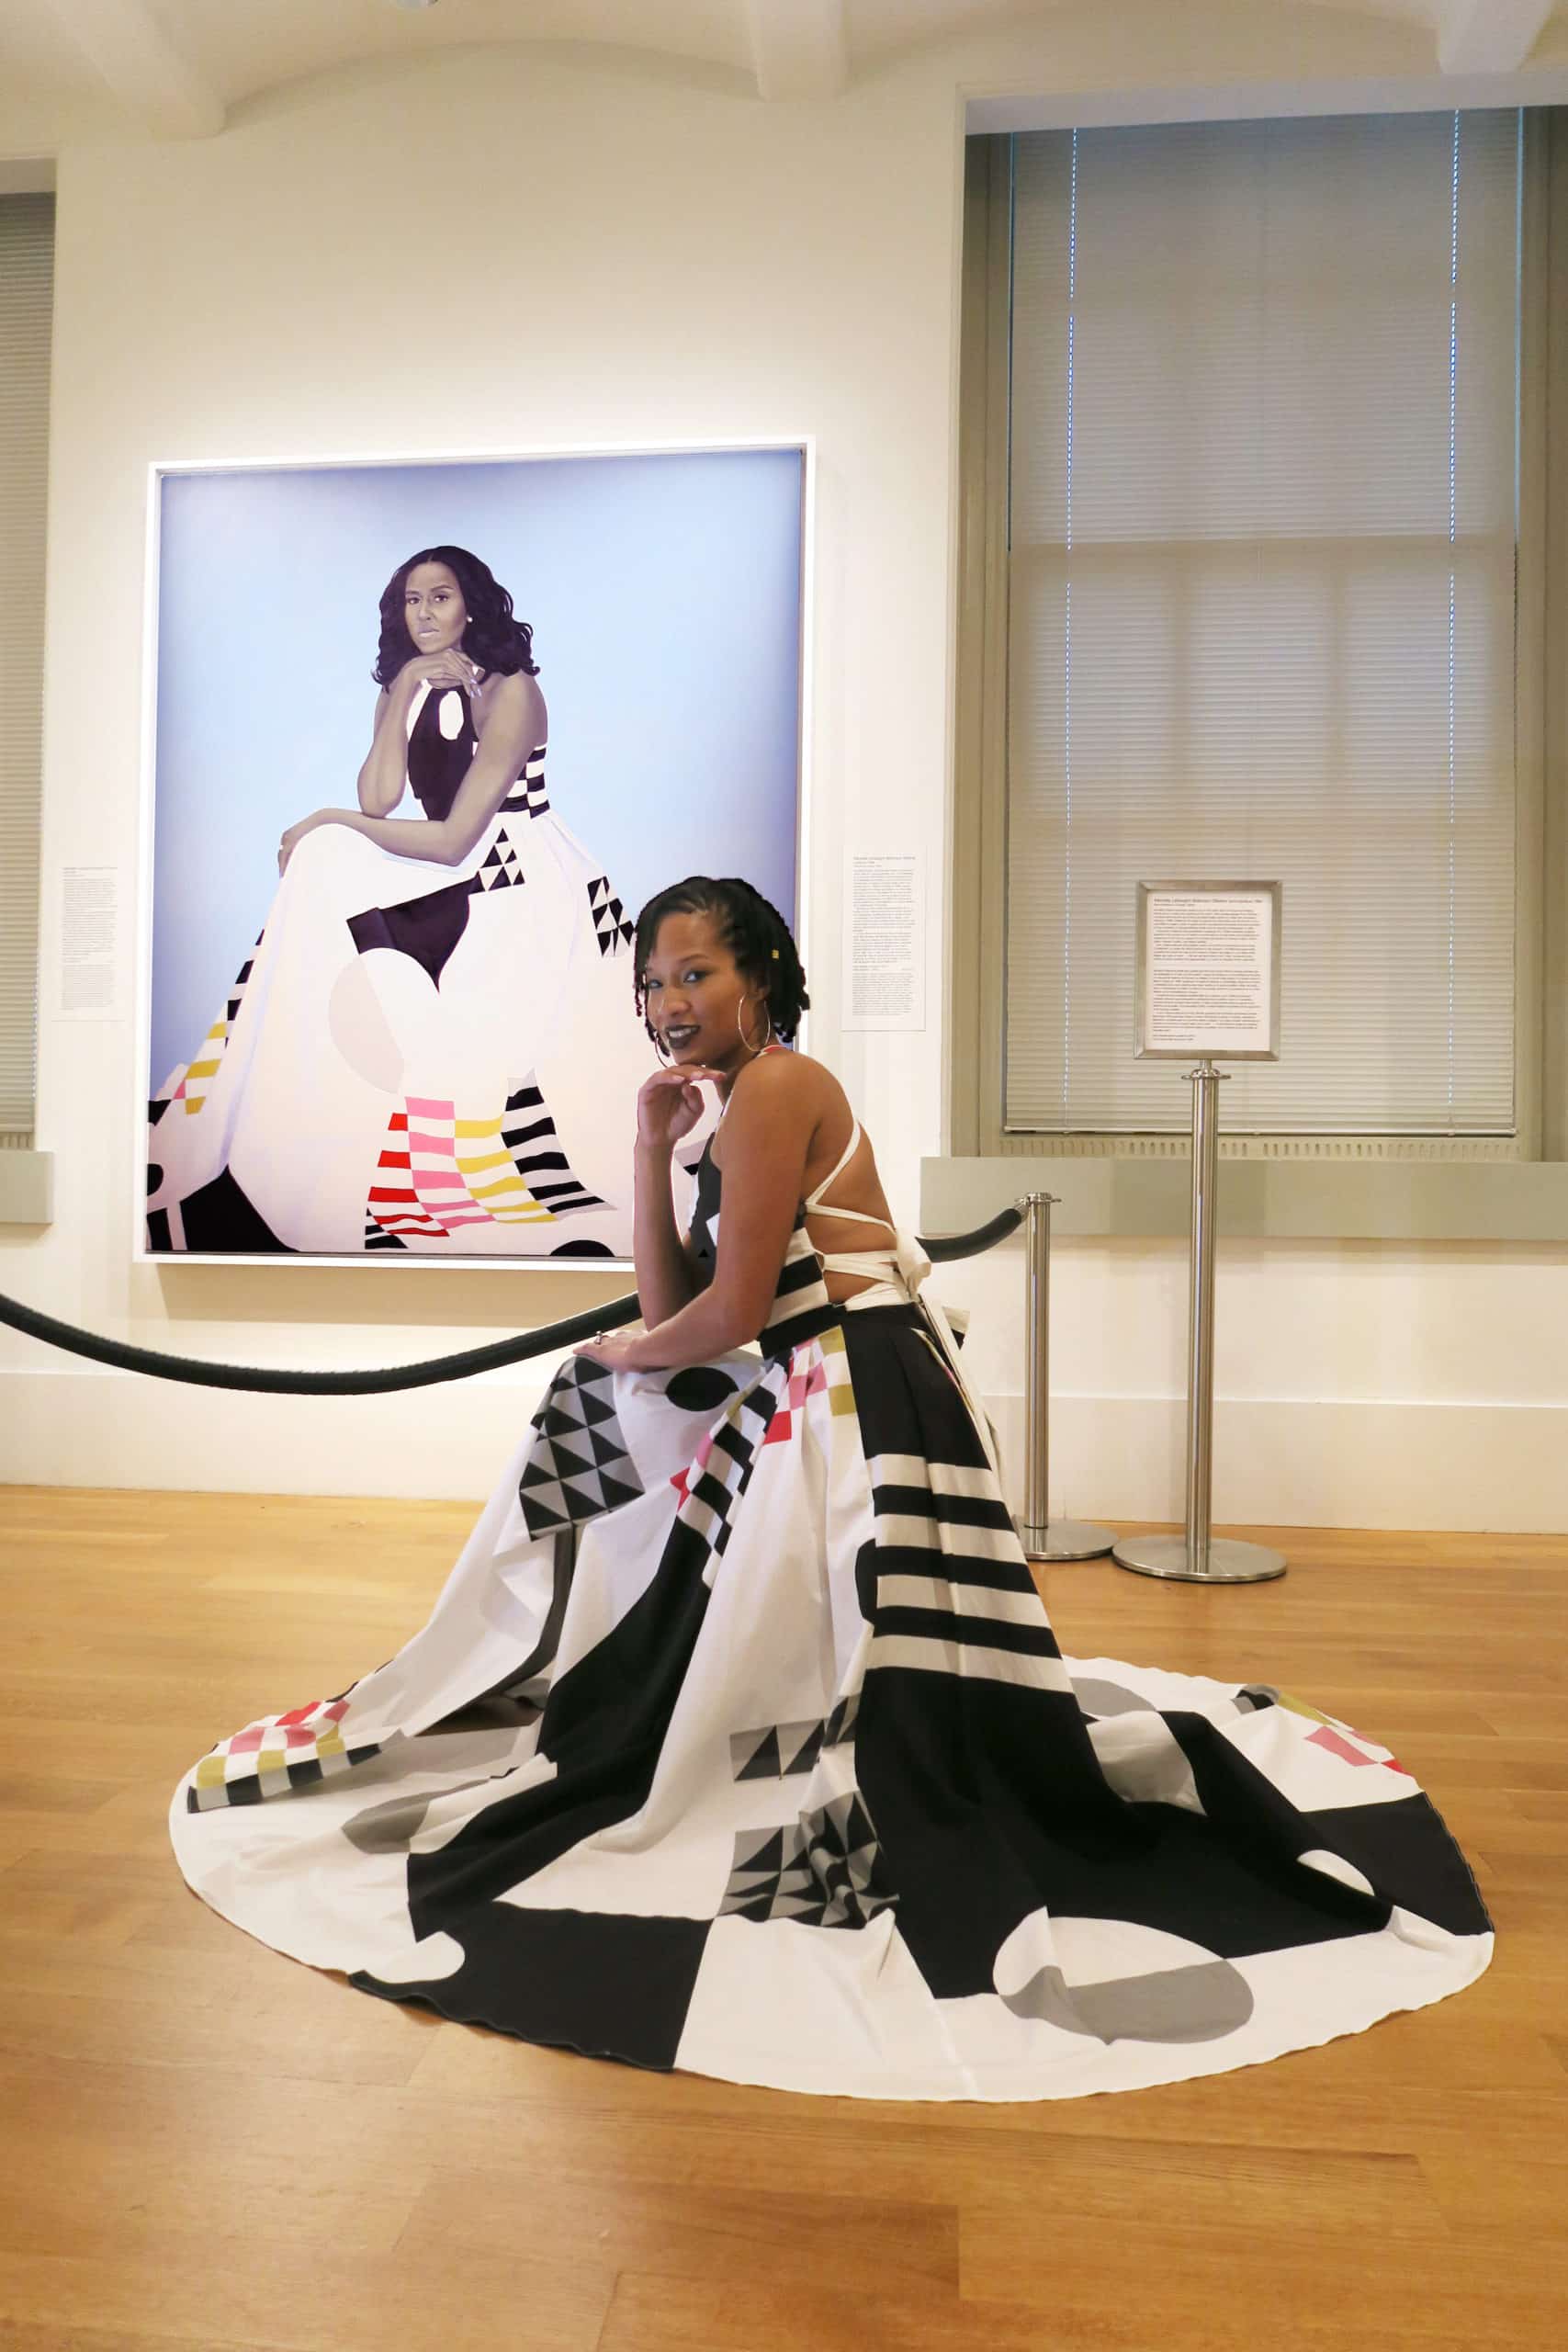 Vestido de Michelle Smith llevado por Dios es-Rivera frente a la obra First Lady Michelle Obama (2018) de Amy Sherald en la National Portrait Gallery. Imagen de Ariel Adkins